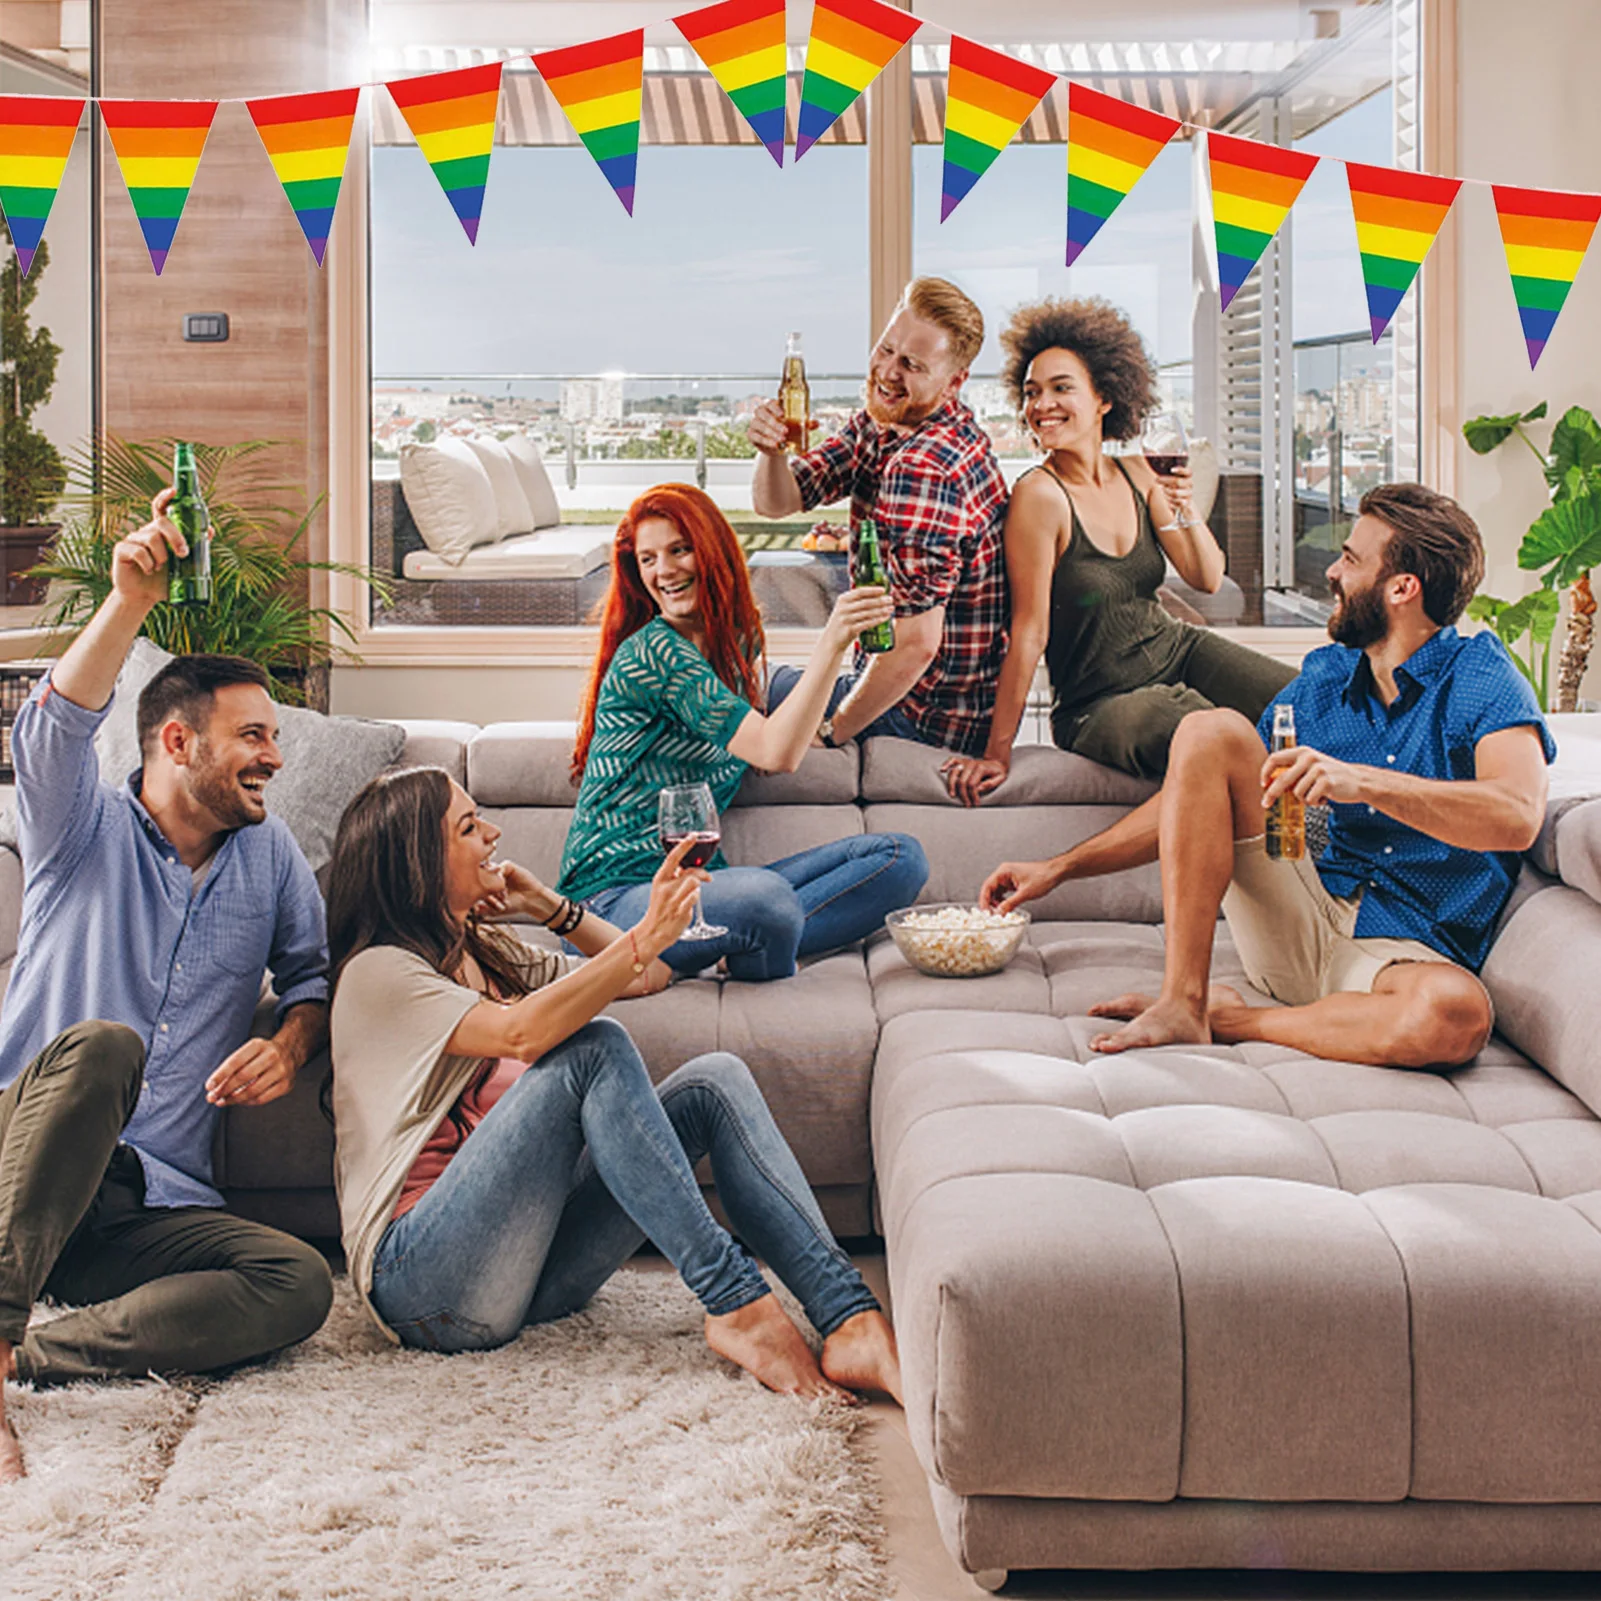 15/30Pcs do Orgulho Gay de Seqüência de caracteres Bandeiras do arco-íris Triangular Bandeira Pennant Banner Para LGBT Lésbicas, Gays Transexuais Celebração Imagem 1